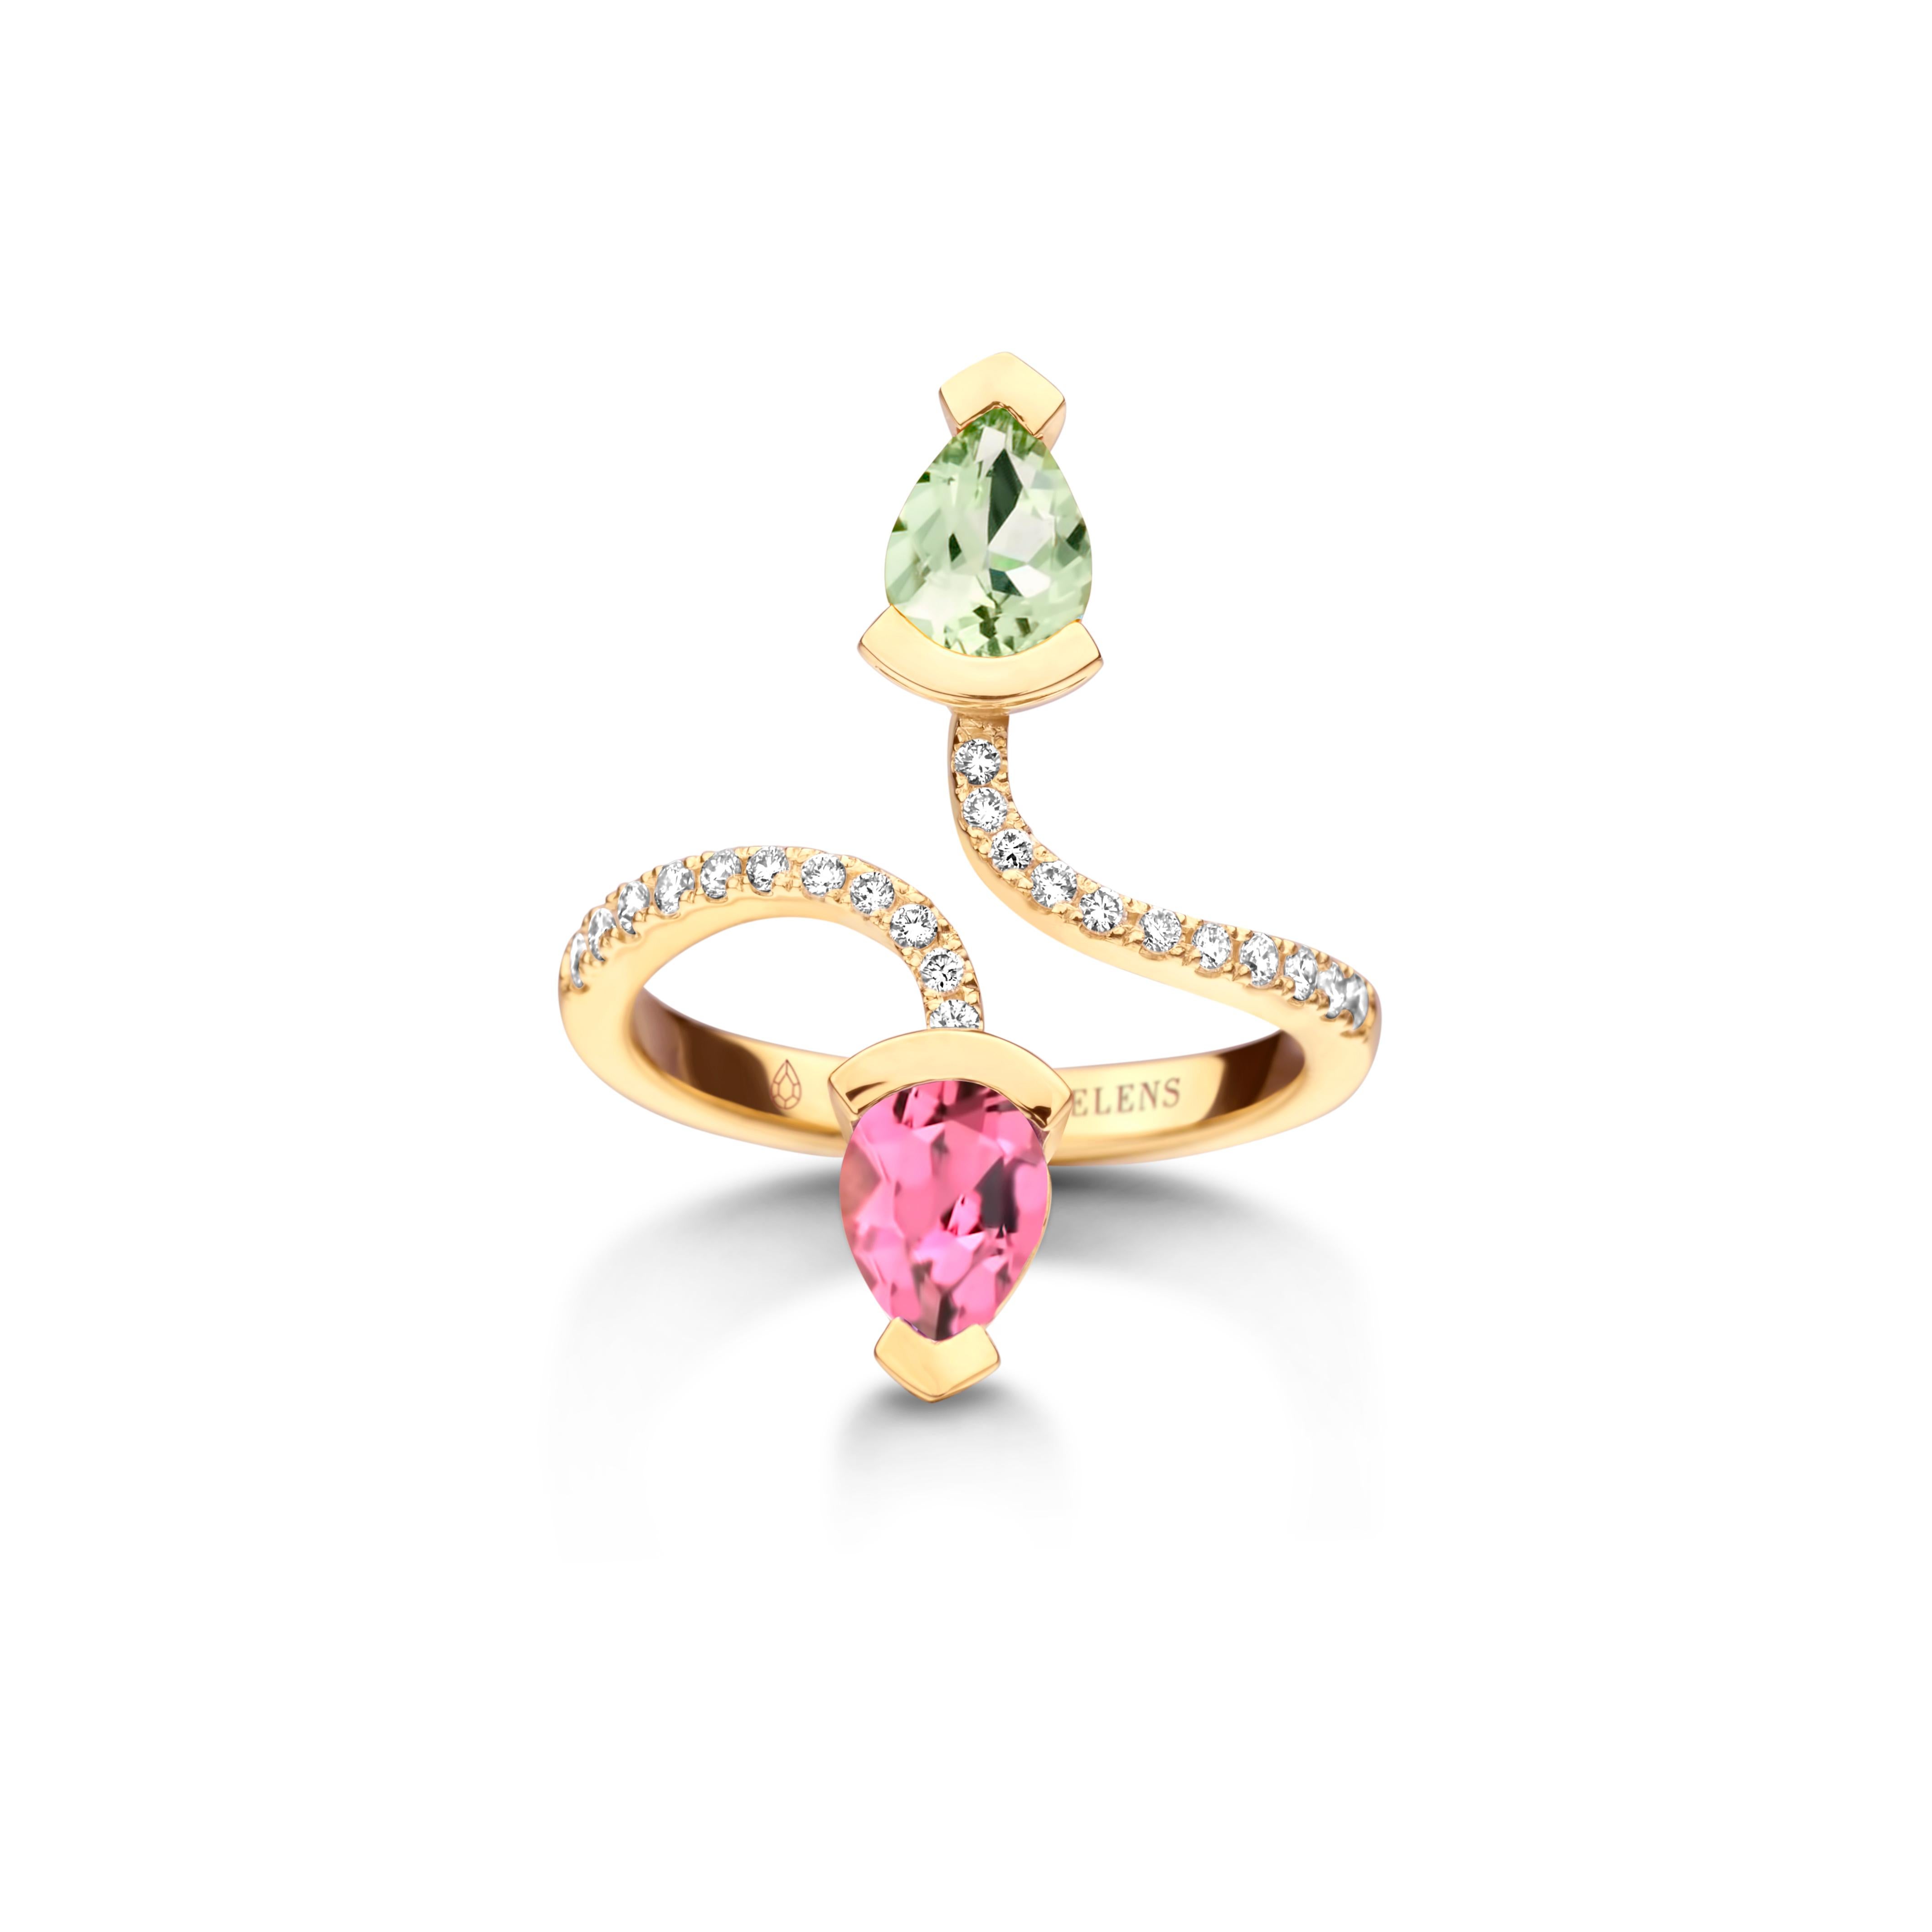 Adeline Duo-Ring aus 18 Kt. Weißgold, 5 g, besetzt mit einem birnenförmigen grünen Beryll (0,70 ct), einem birnenförmigen rosa Turmalin (0,70 ct) und 0,19 ct Diamanten mit weißem Brillantschliff - Qualität VS F. Celine Roelens, Goldschmiedin und